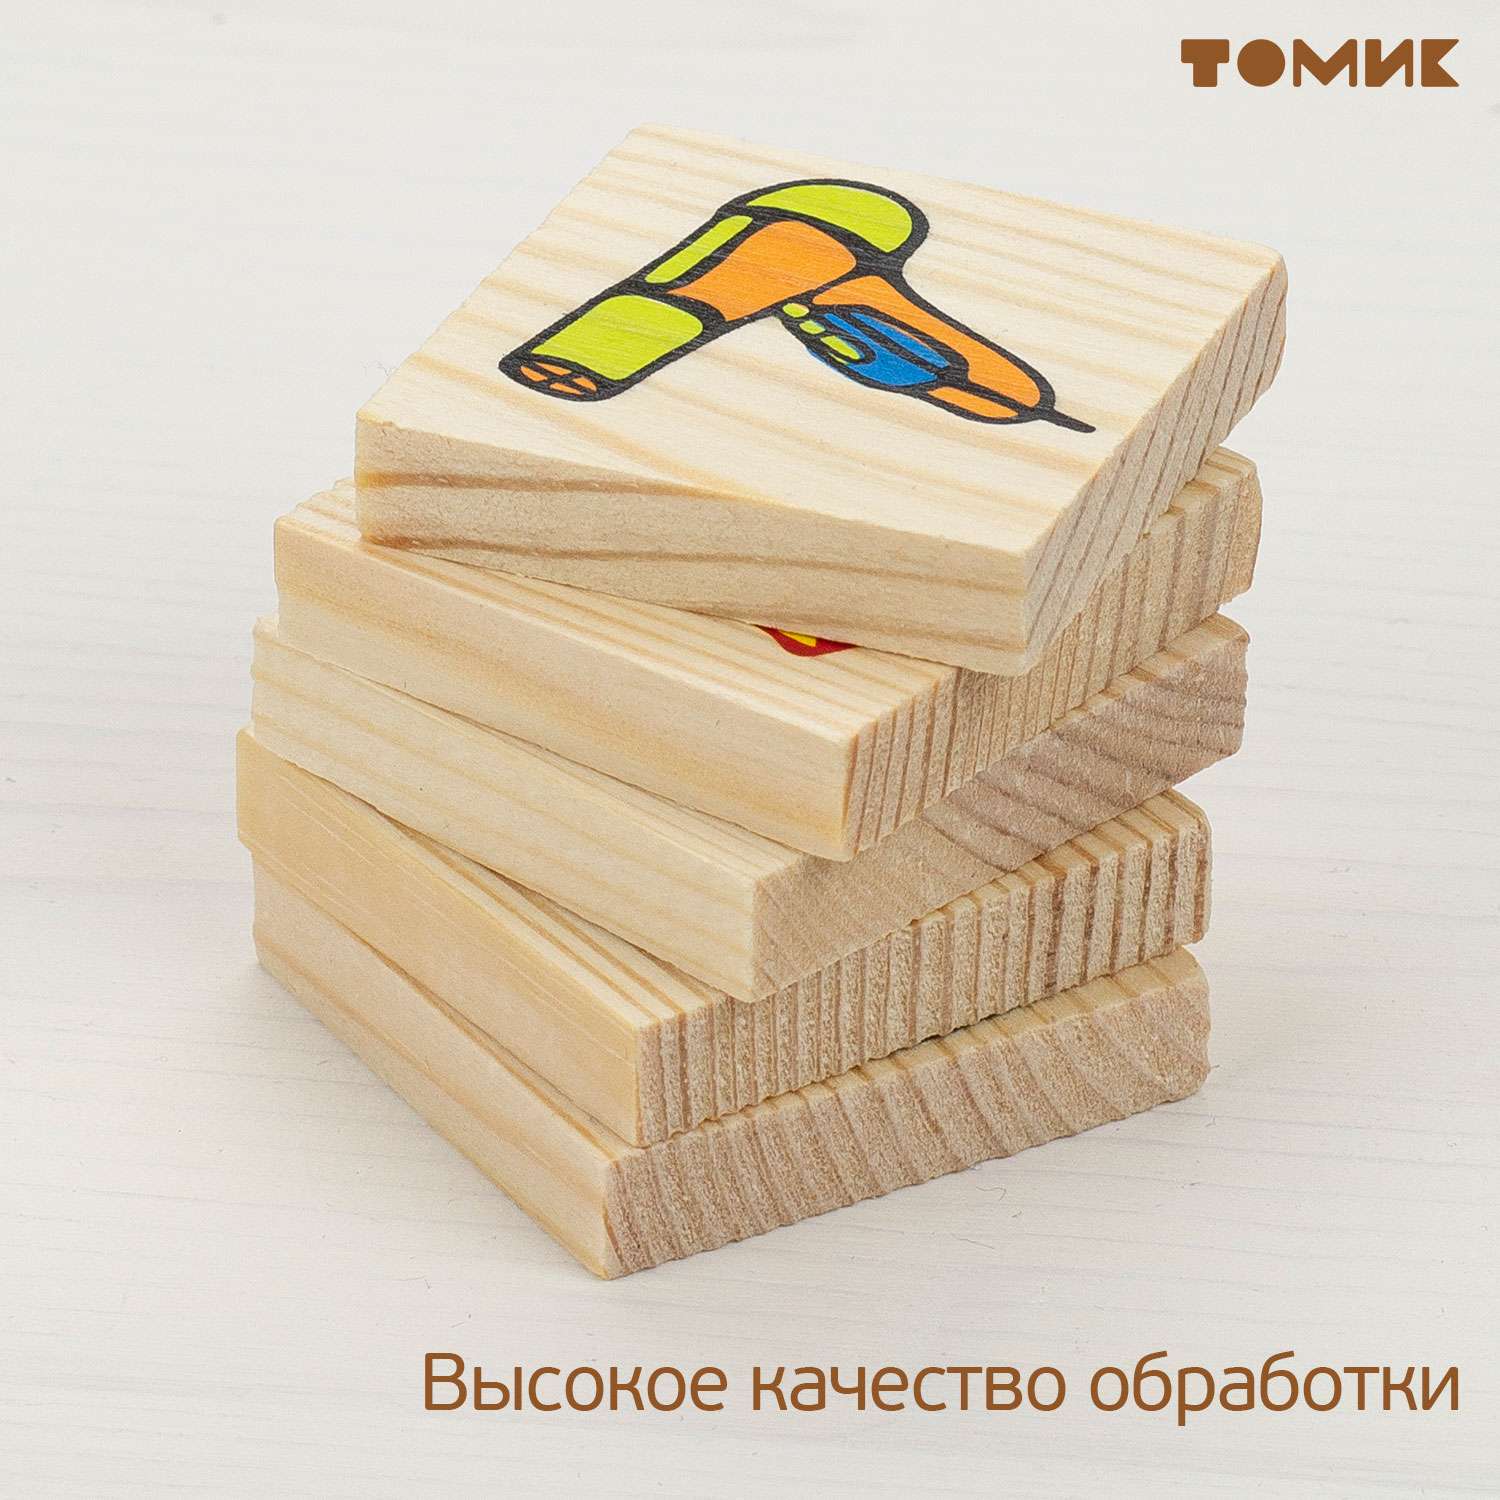 Лото детское деревянное Томик Предметы 48 деталей 6-2222-3 - фото 5